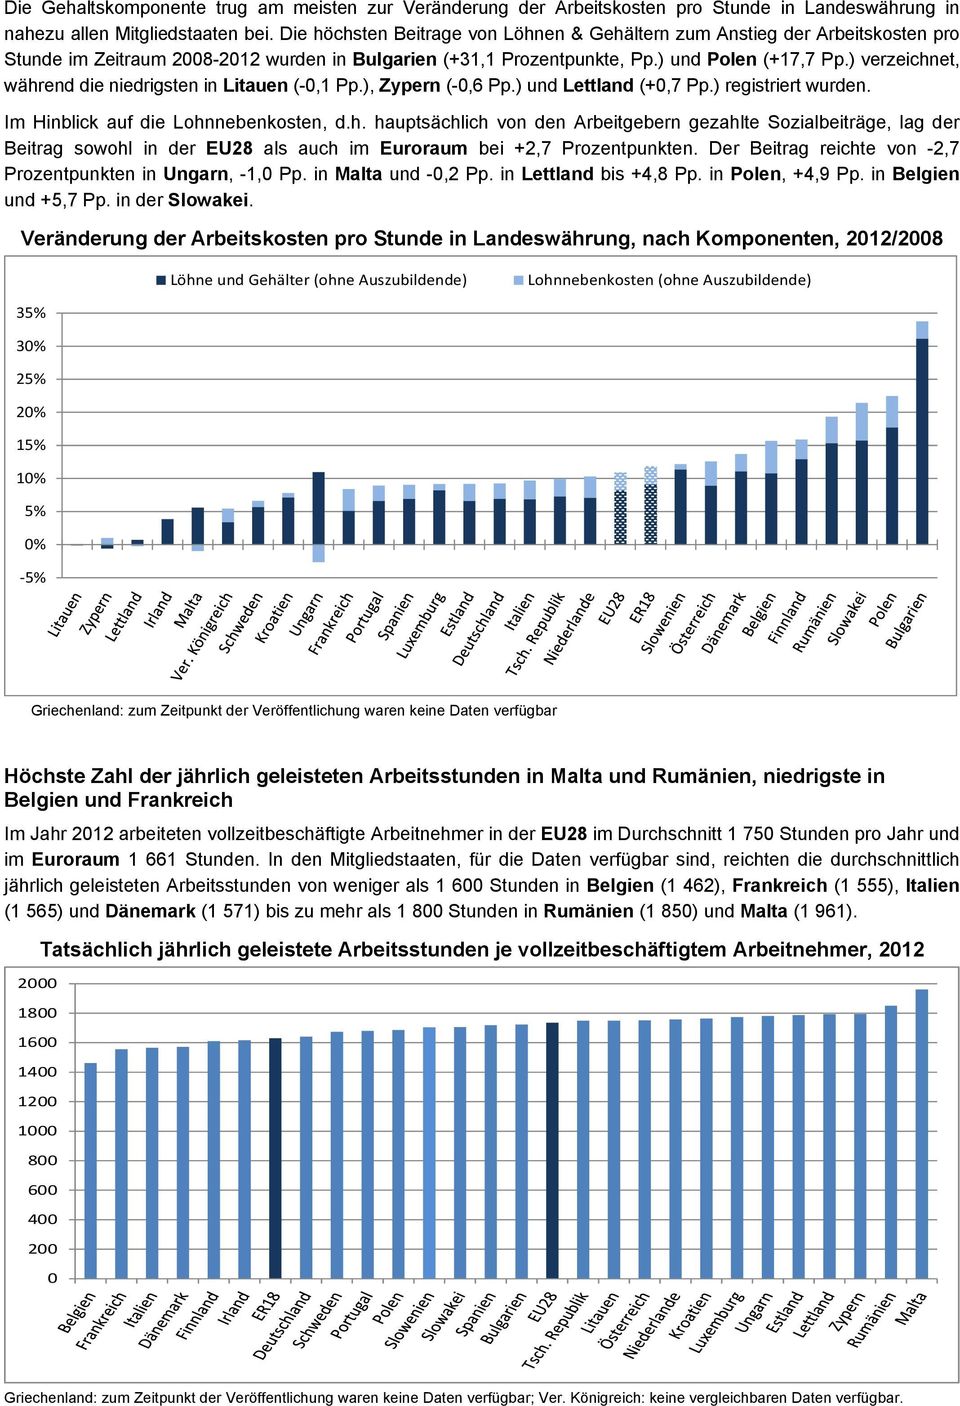 ) verzeichnet, während die niedrigsten in Litauen (-0,1 Pp.), Zypern (-0,6 Pp.) und Lettland (+0,7 Pp.) registriert wurden. Im Hinblick auf die Lohnnebenkosten, d.h. hauptsächlich von den Arbeitgebern gezahlte Sozialbeiträge, lag der Beitrag sowohl in der EU28 als auch im Euroraum bei +2,7 Prozentpunkten.